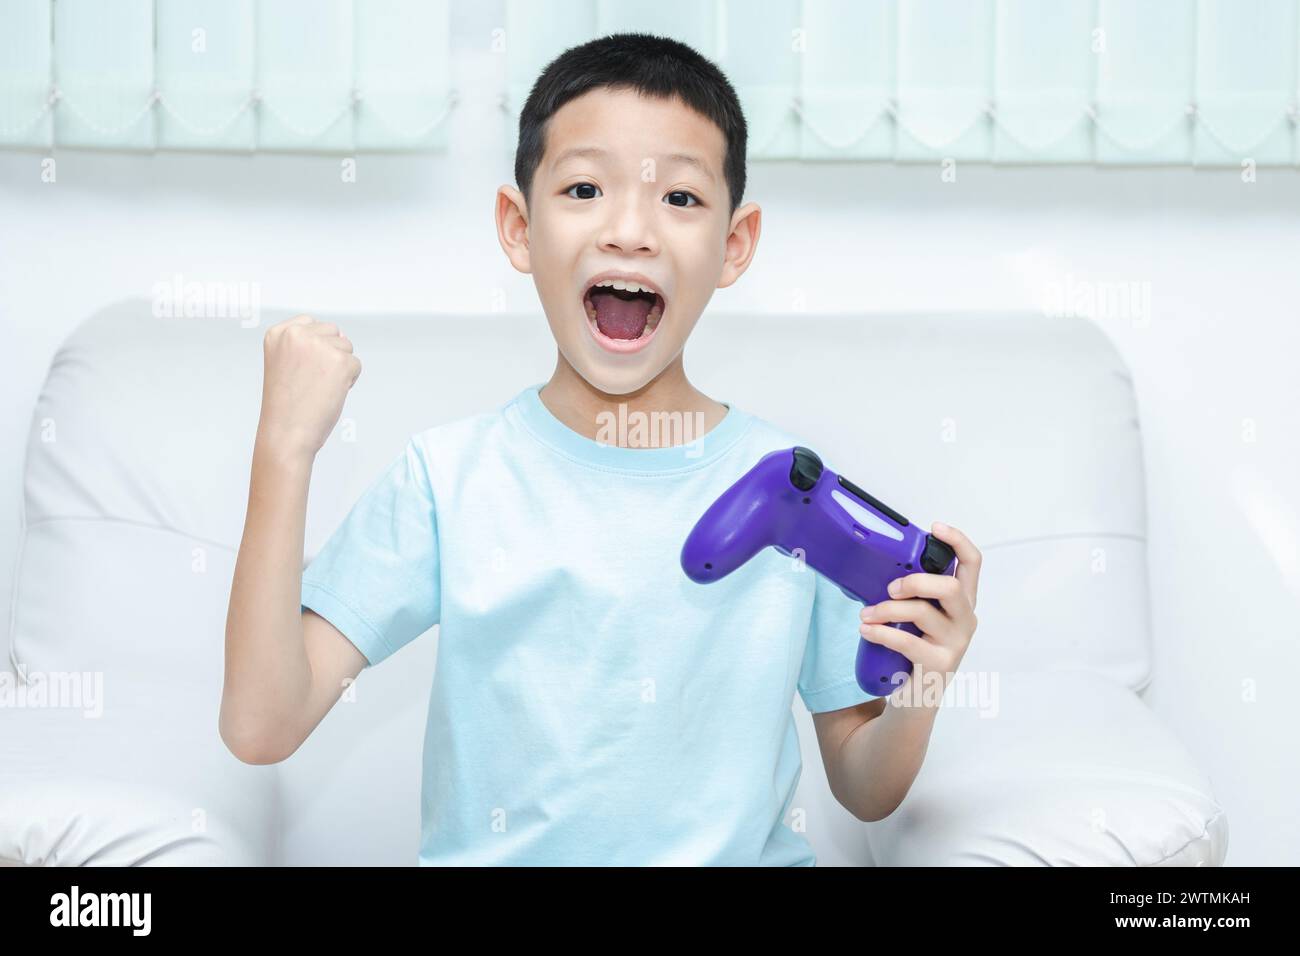 Petit garçon asiatique jouant à un jeu vidéo. plan d'un enfant tenant une manette de jeu. Asian Boy est ravi parce qu'il a gagné et lève les mains joyeusement. Banque D'Images